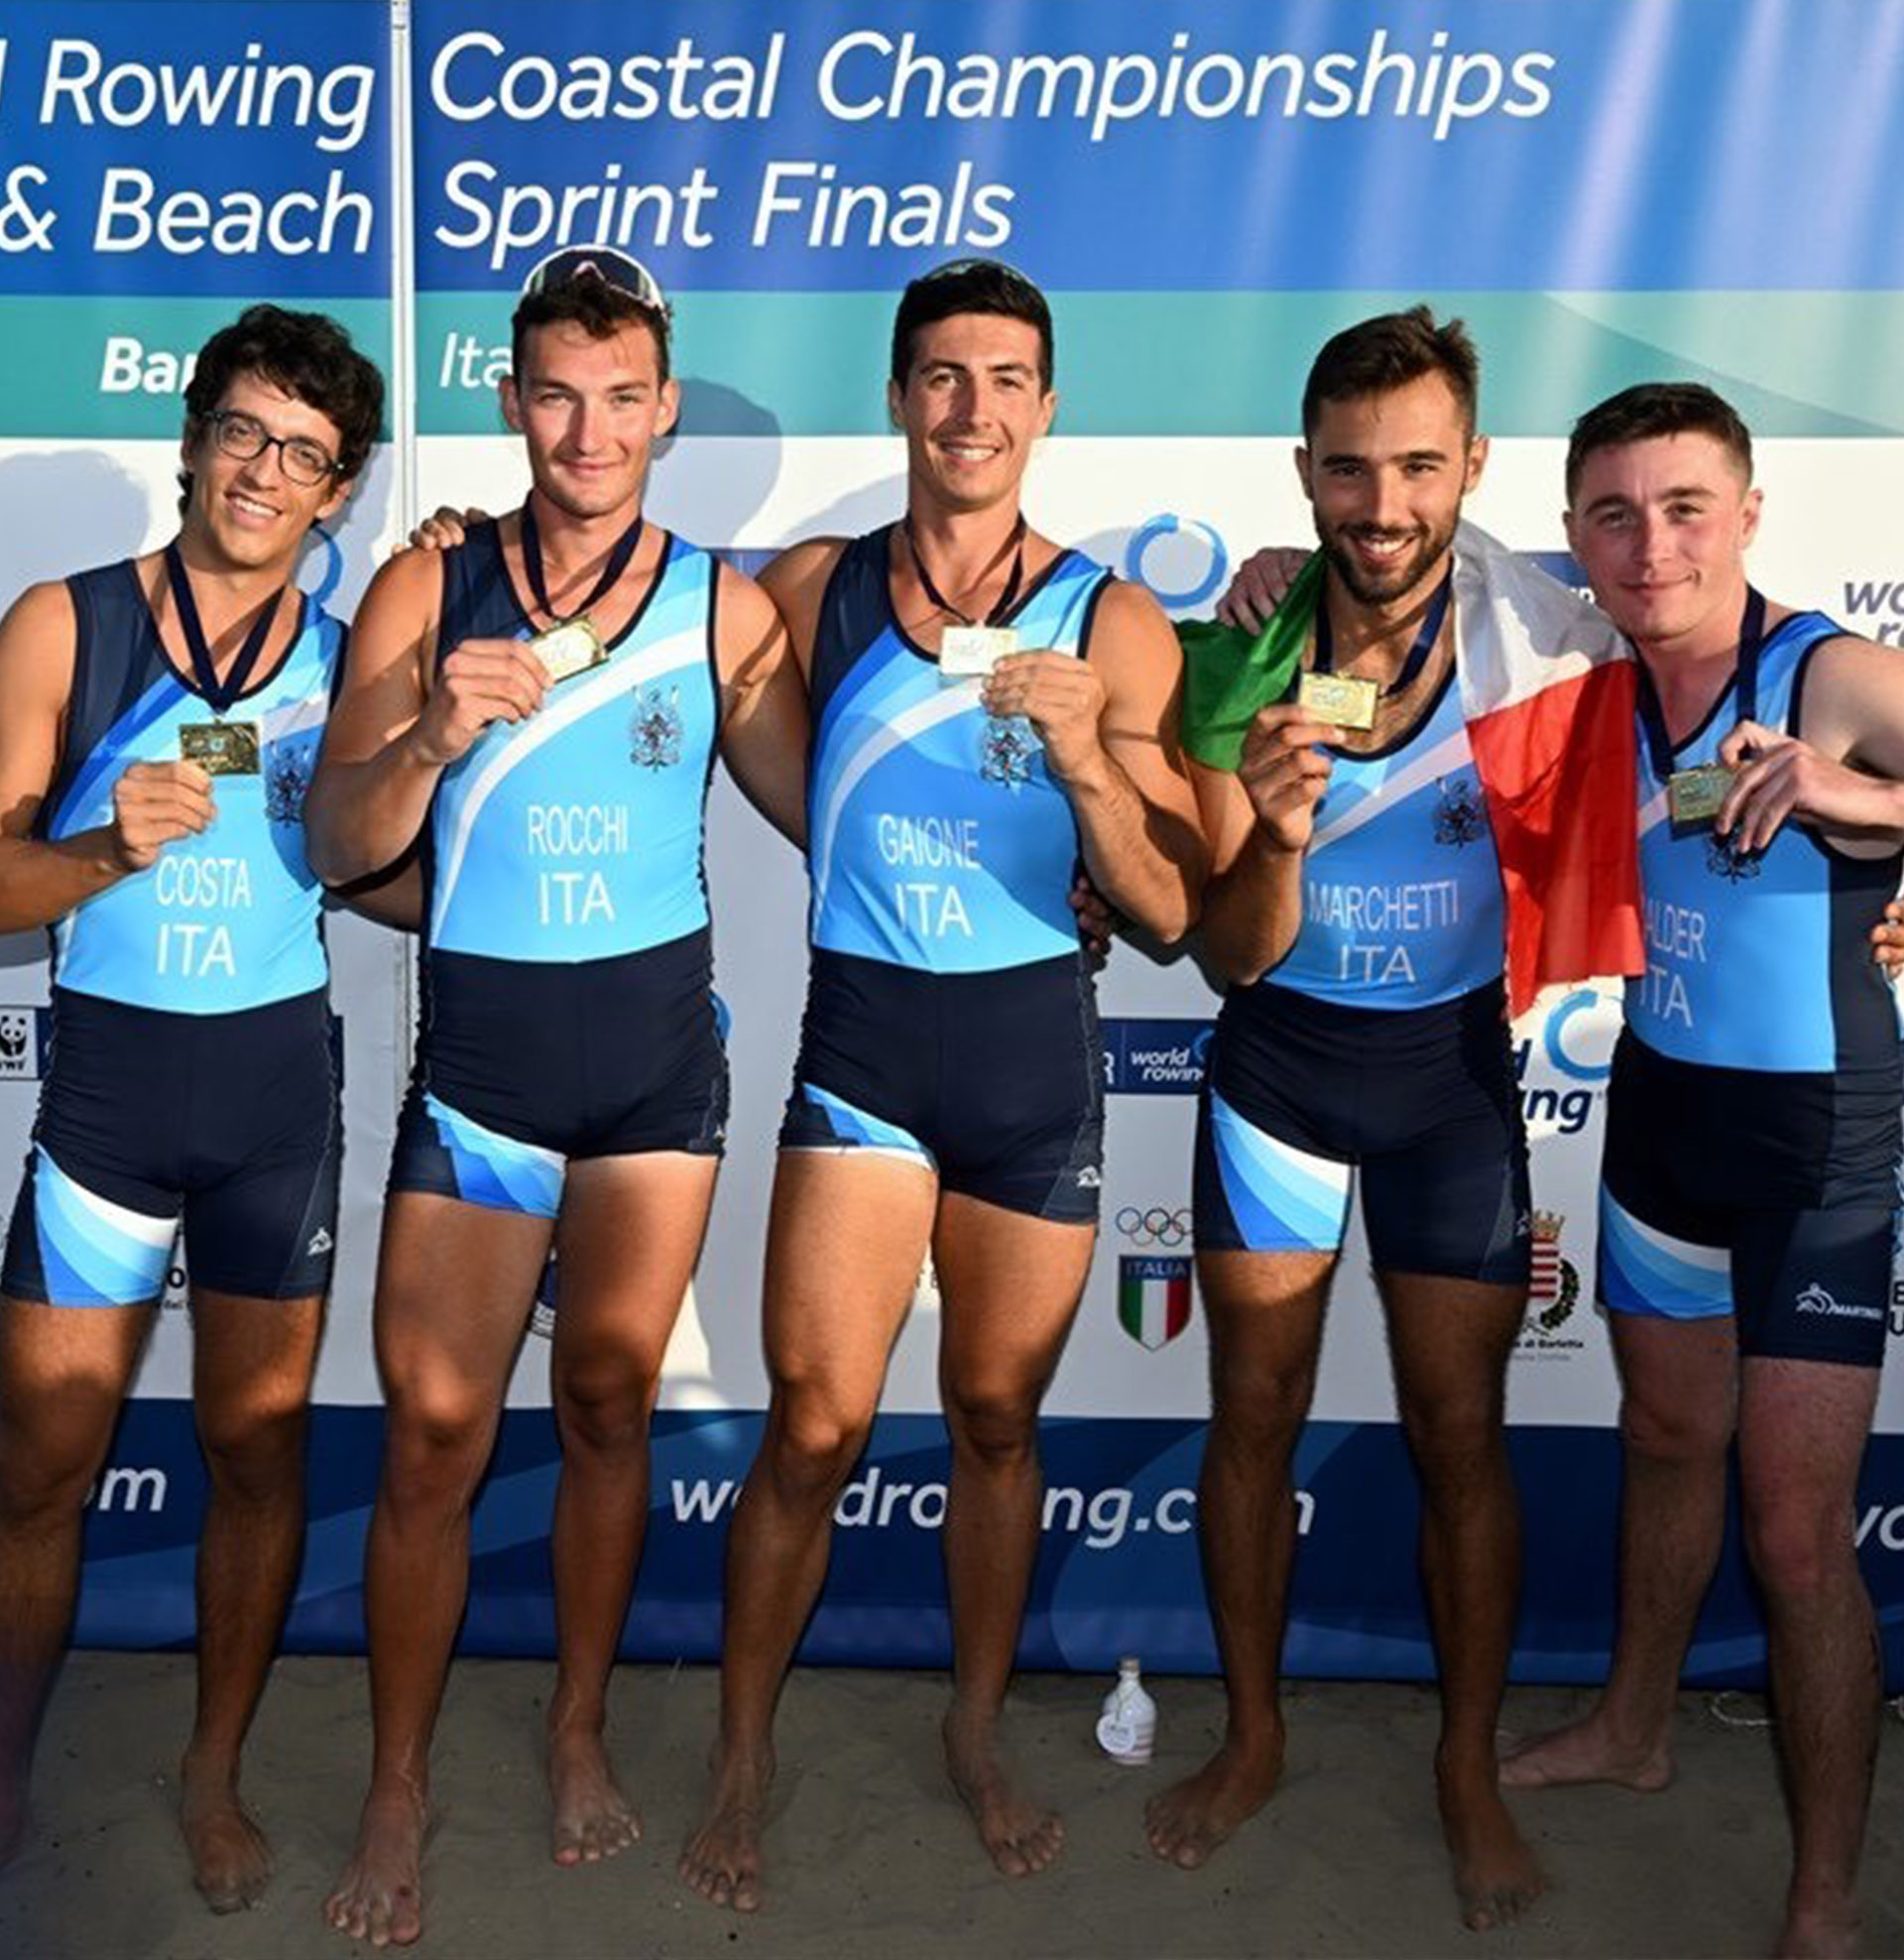 Equipaggio Coastal Rowing